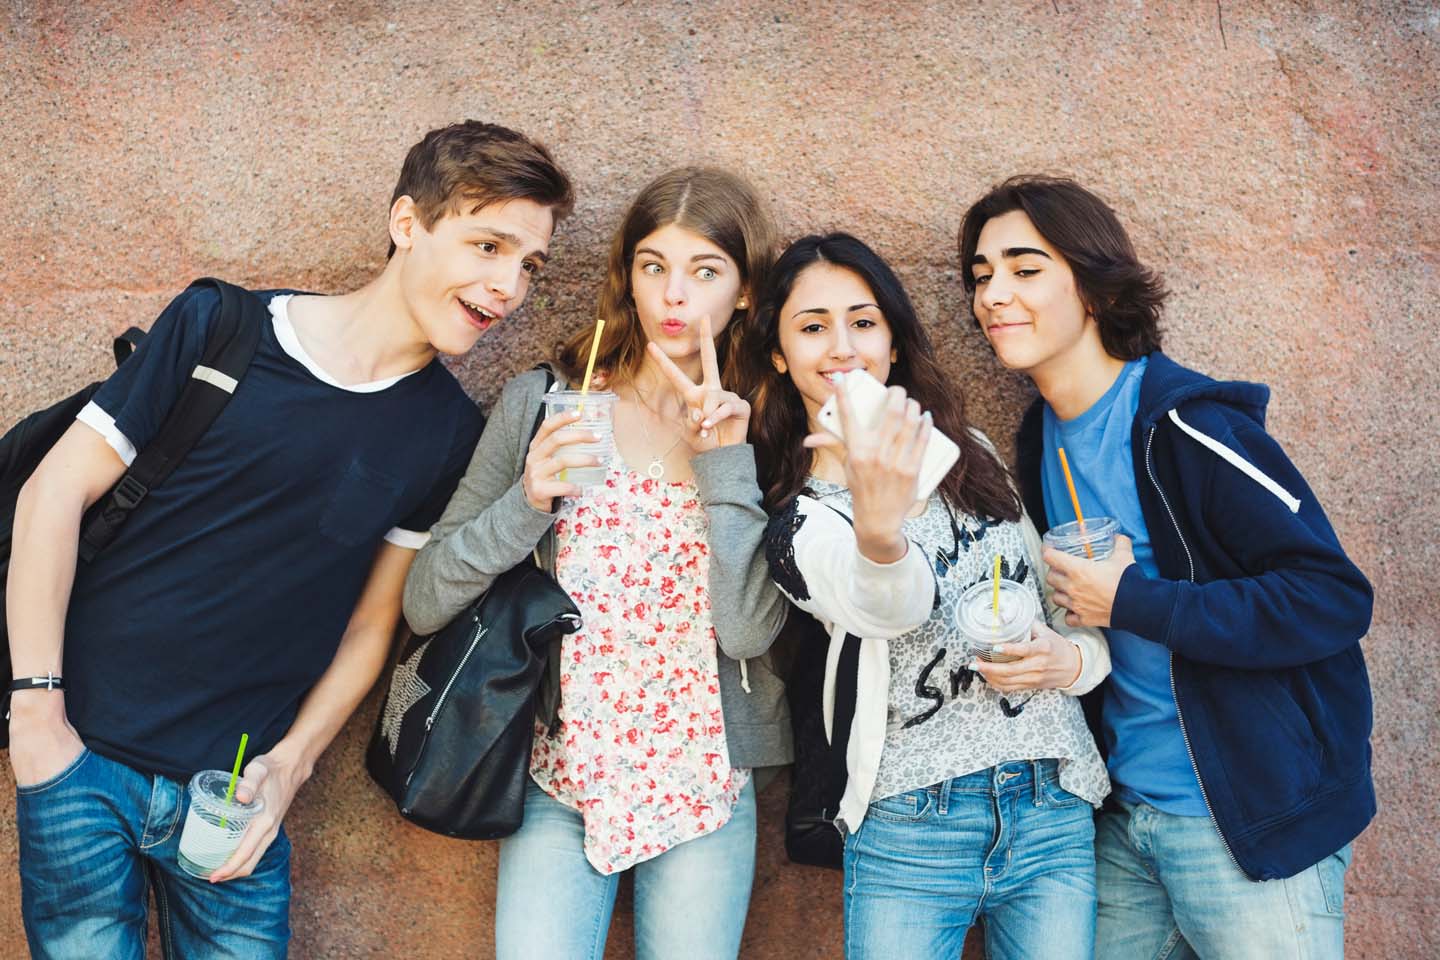 Junge Menschen posieren für ein Selfie.